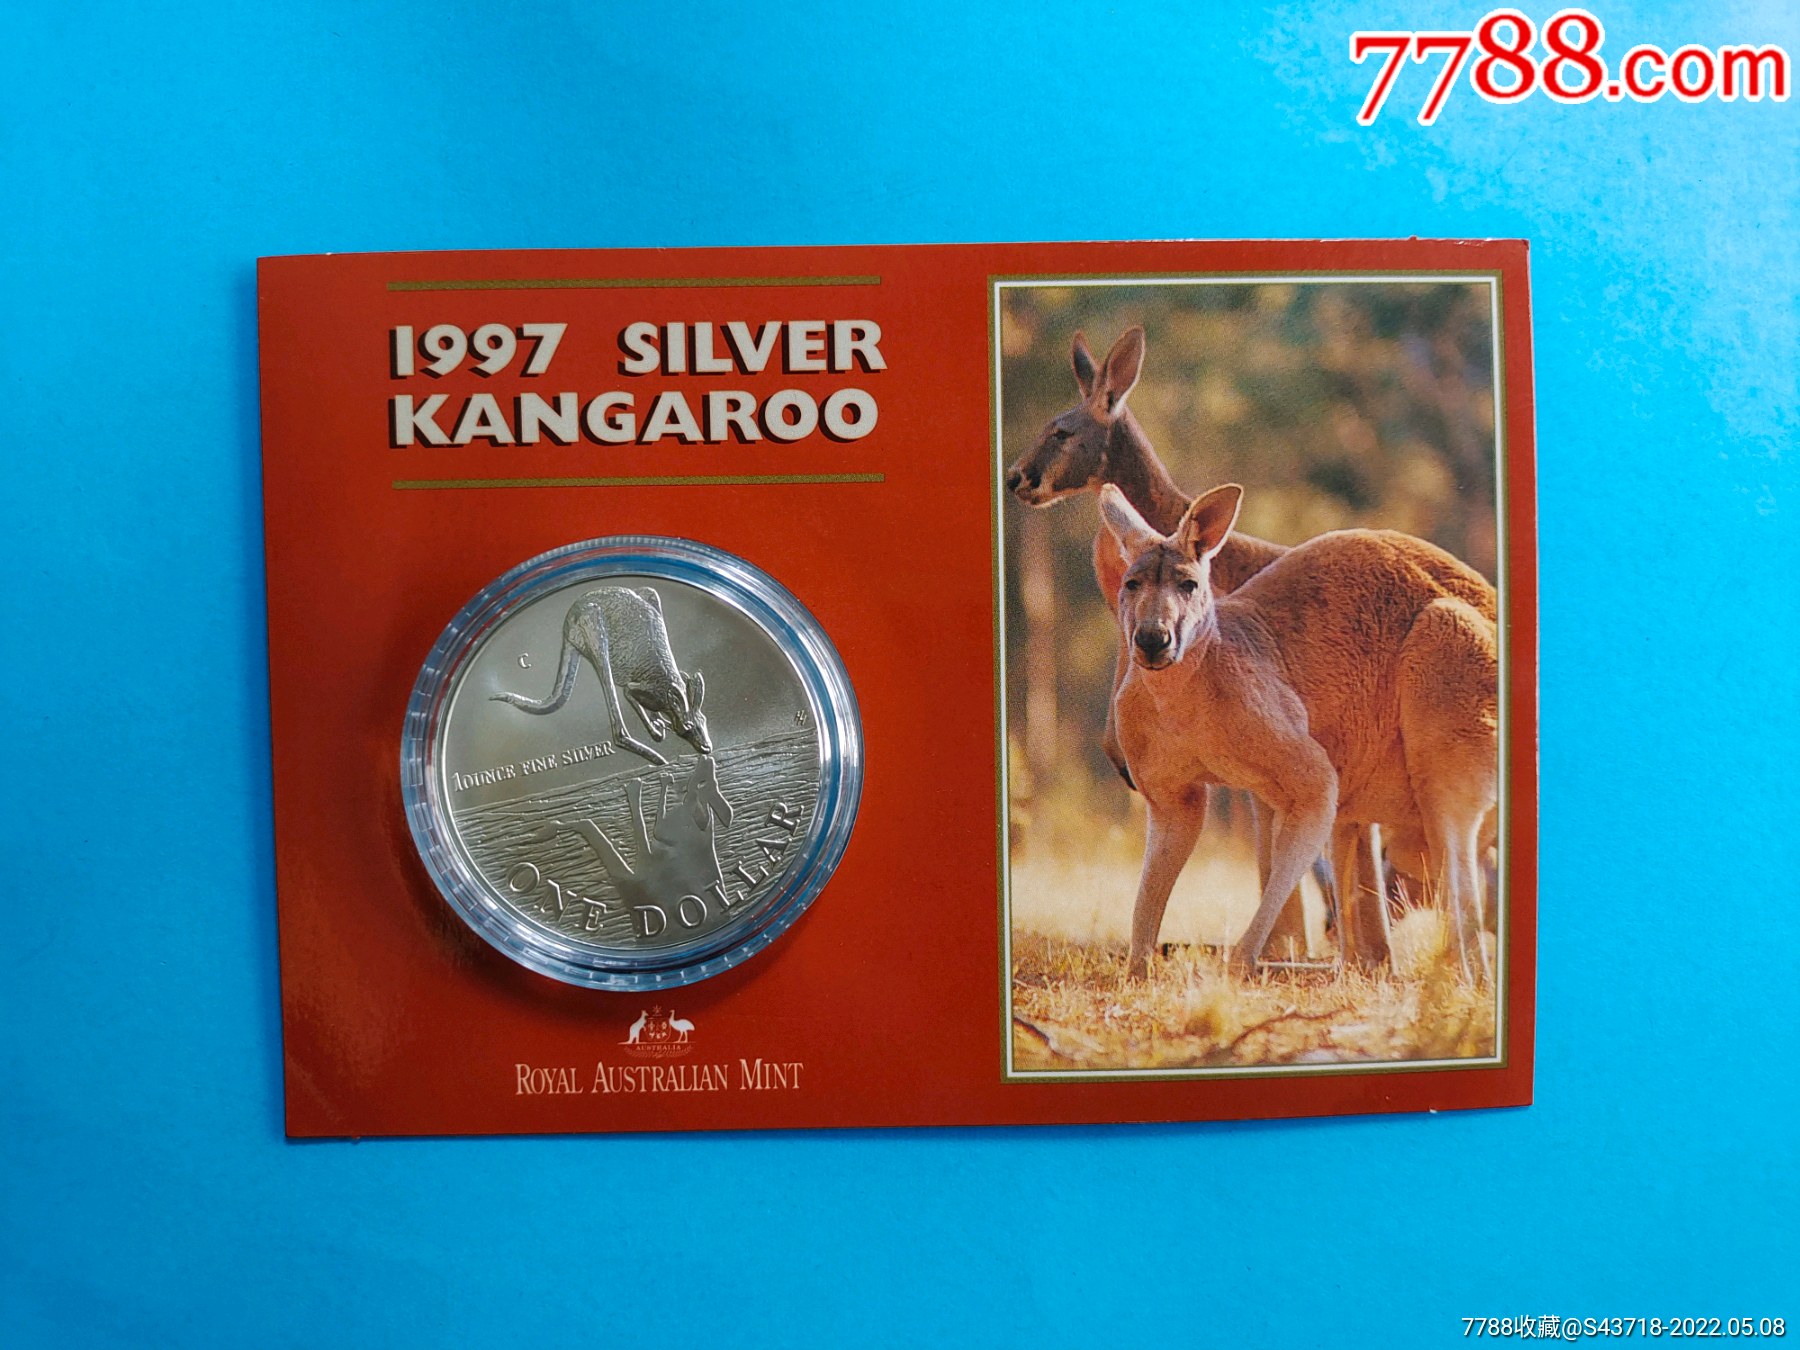 澳大利亚袋鼠邮票图片